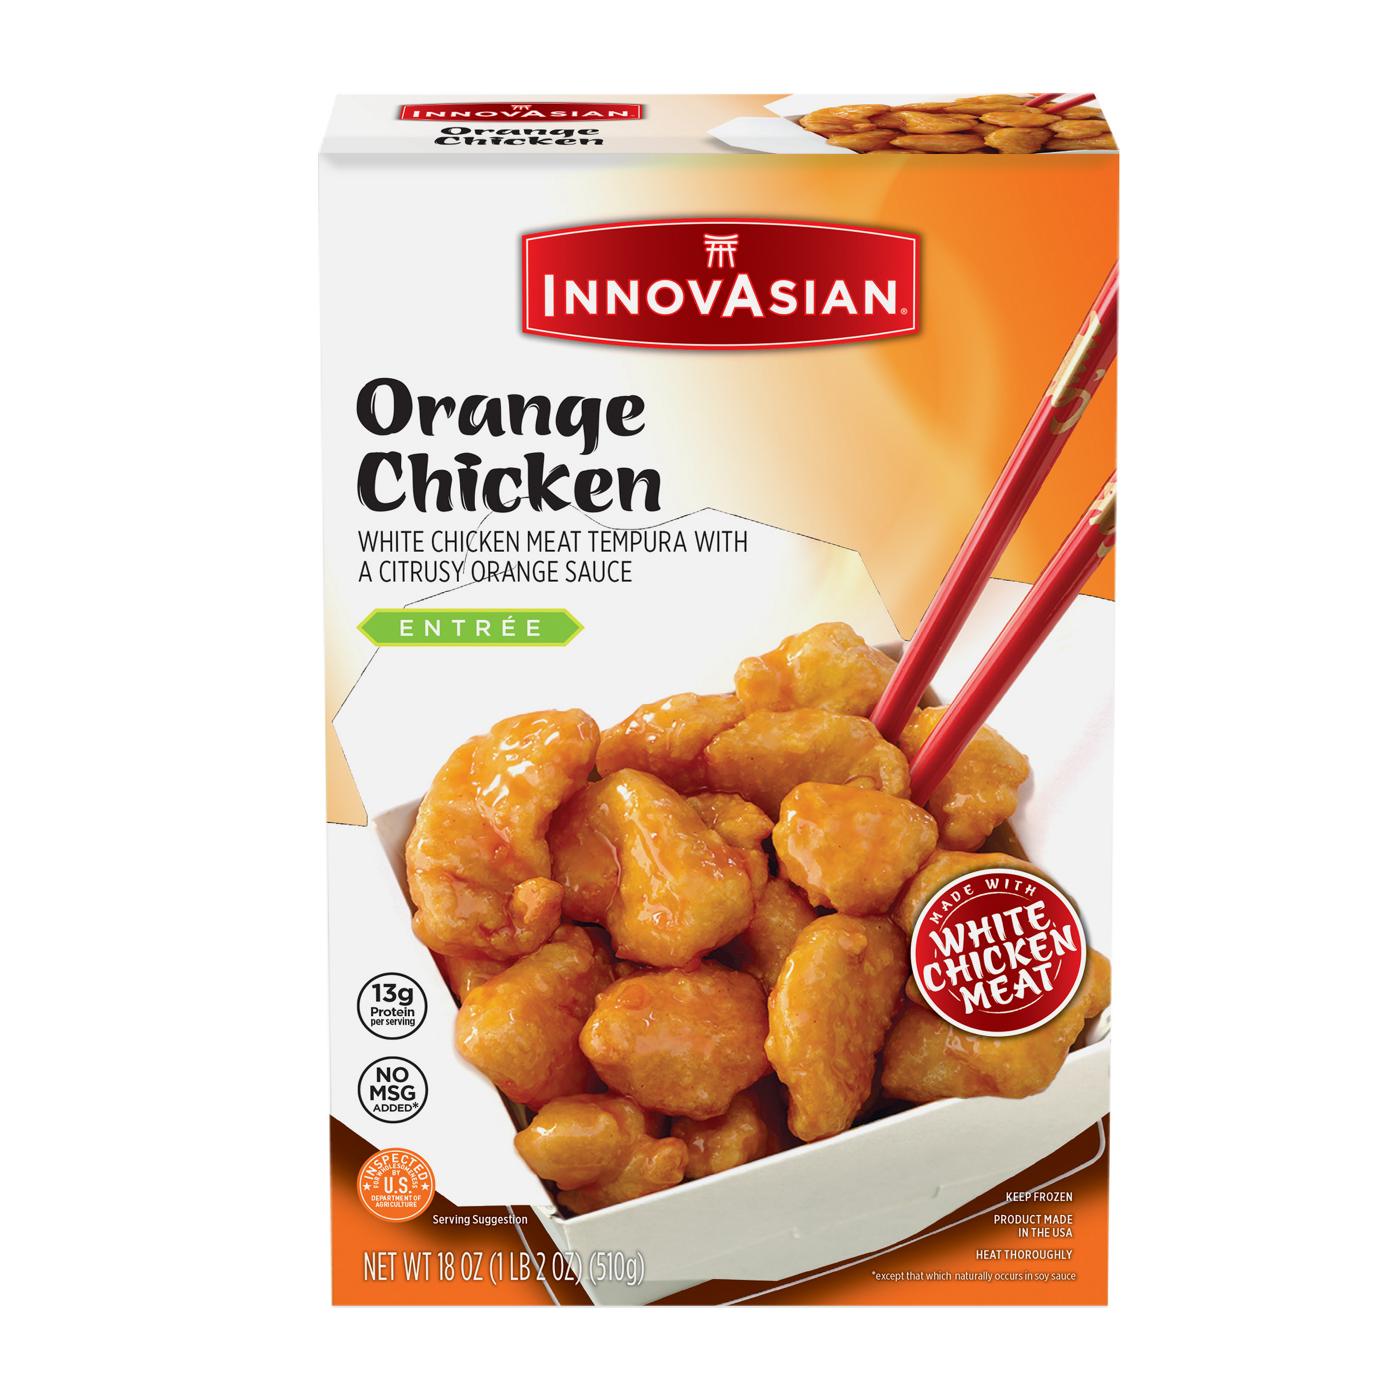 InnovAsian Frozen Orange Chicken; image 1 of 7